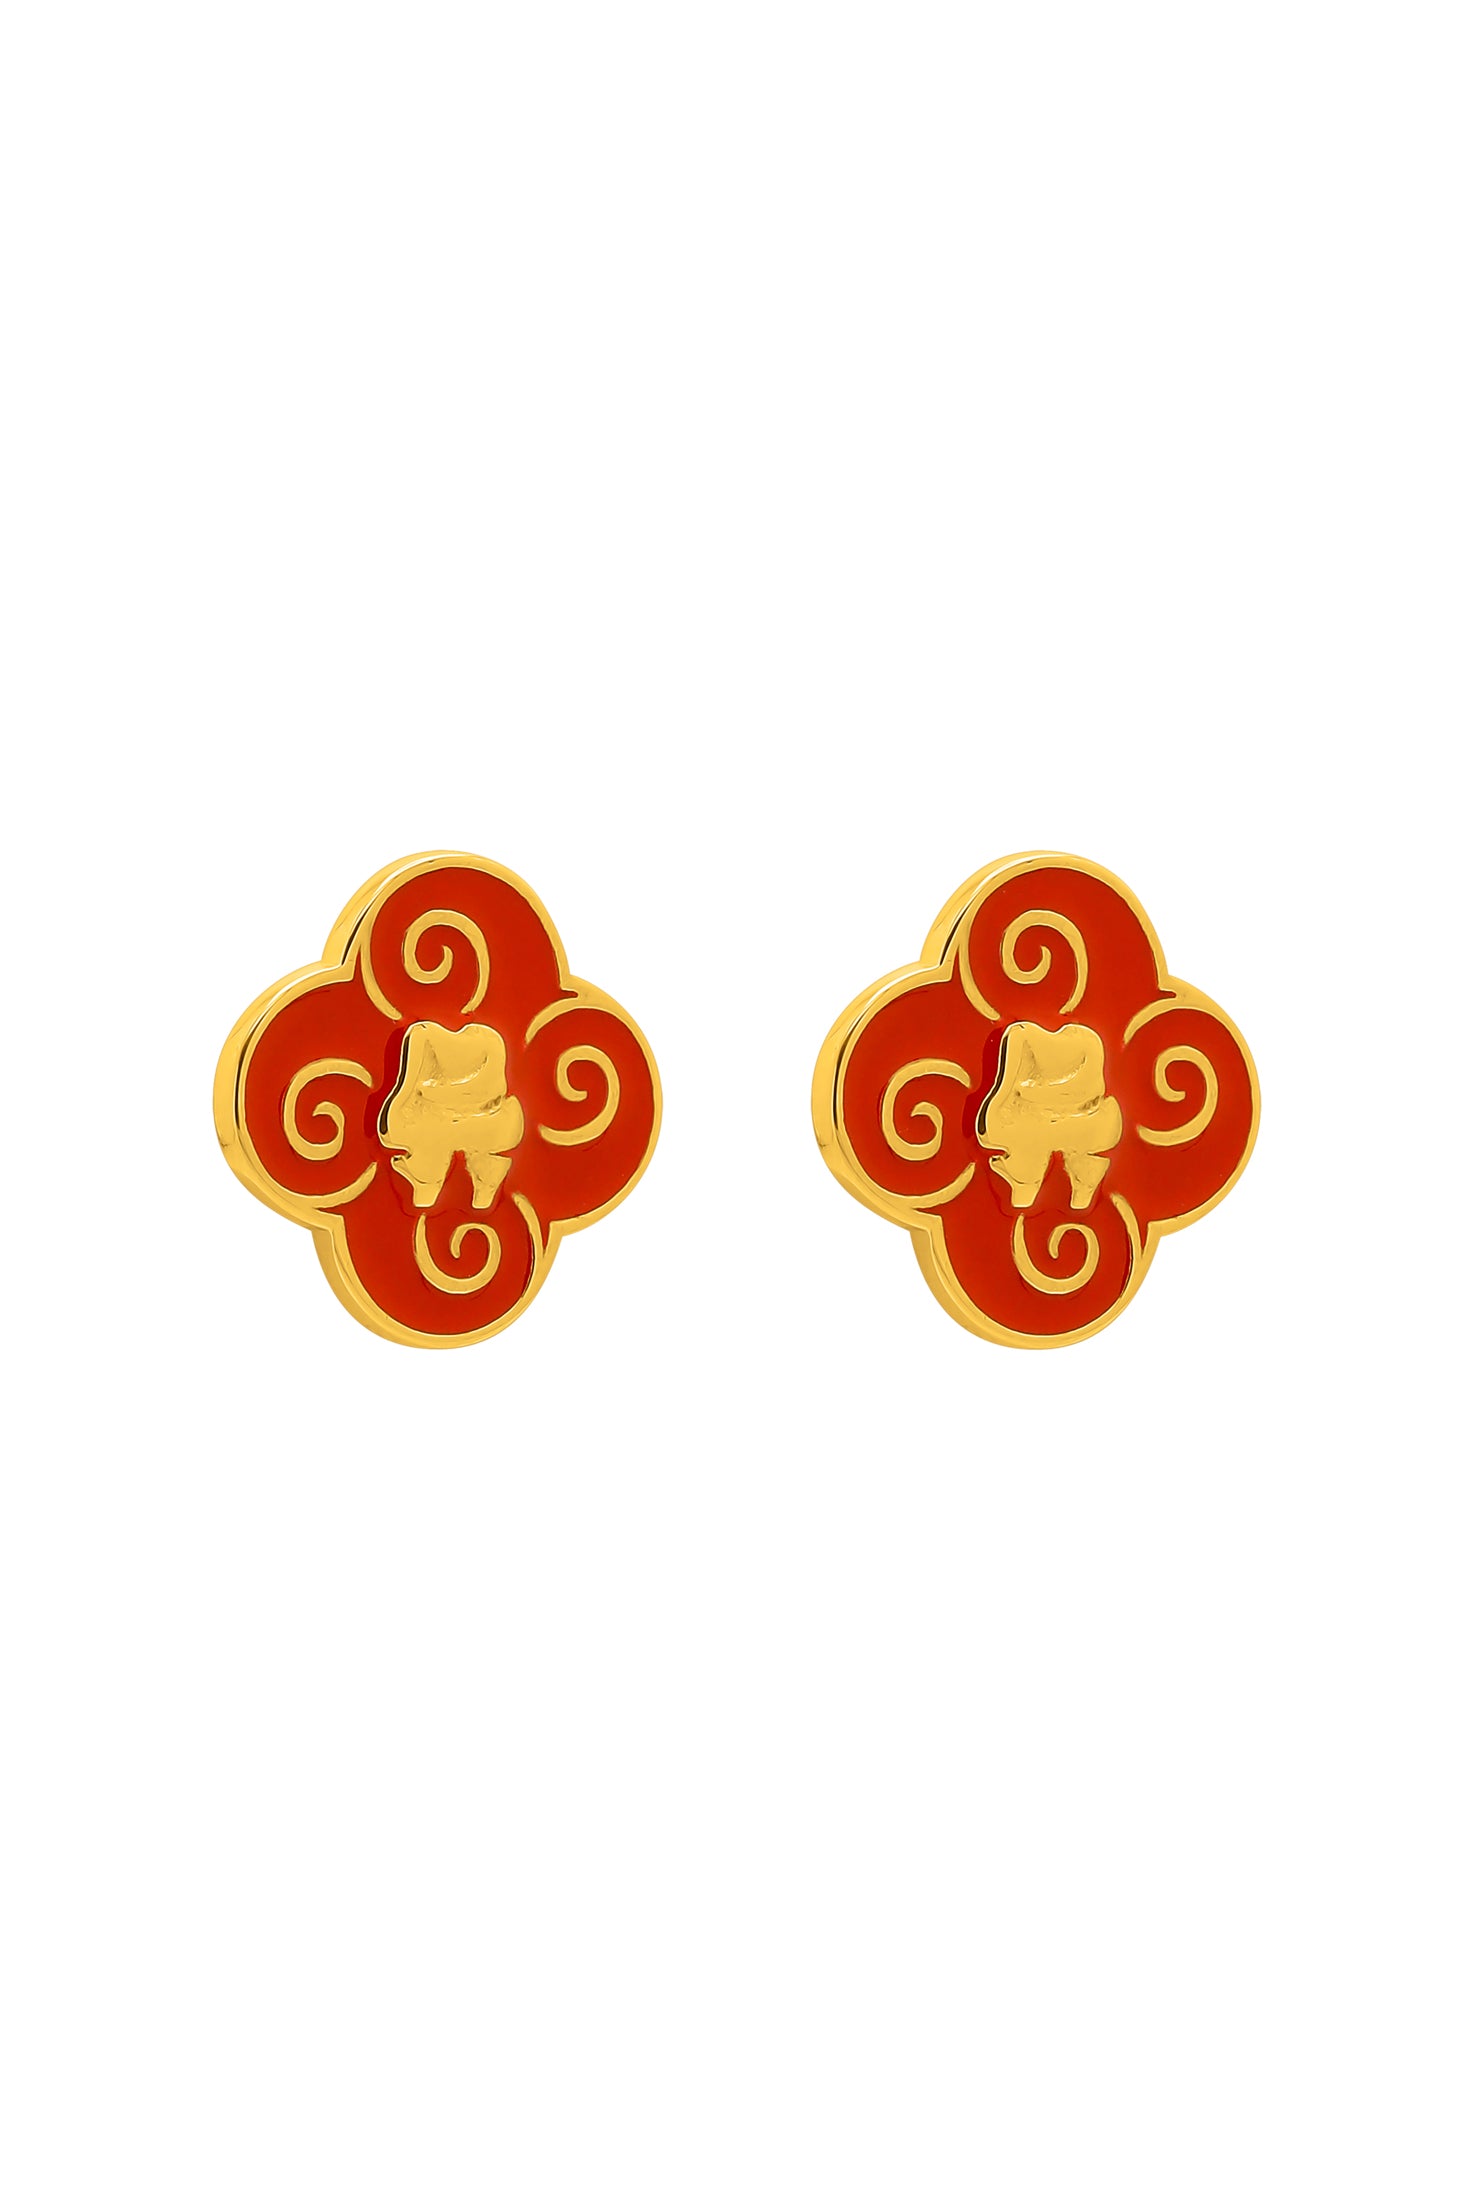 Neolithic Red Ochre Stud Earring Set